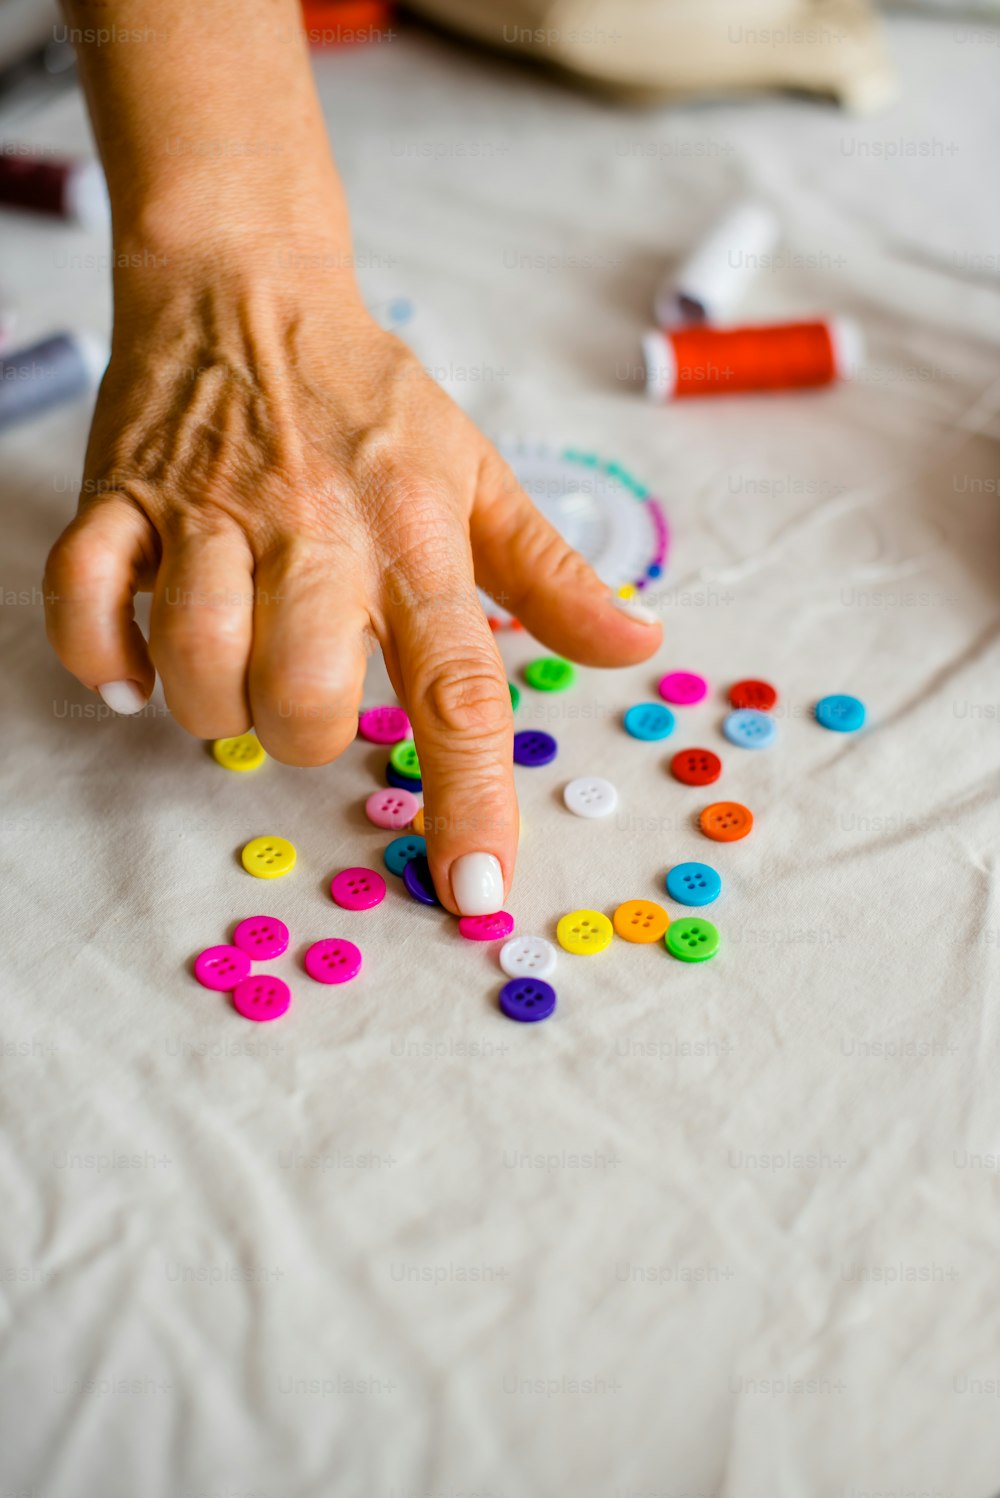 la main d’une personne qui cherche des boutons colorés sur une table